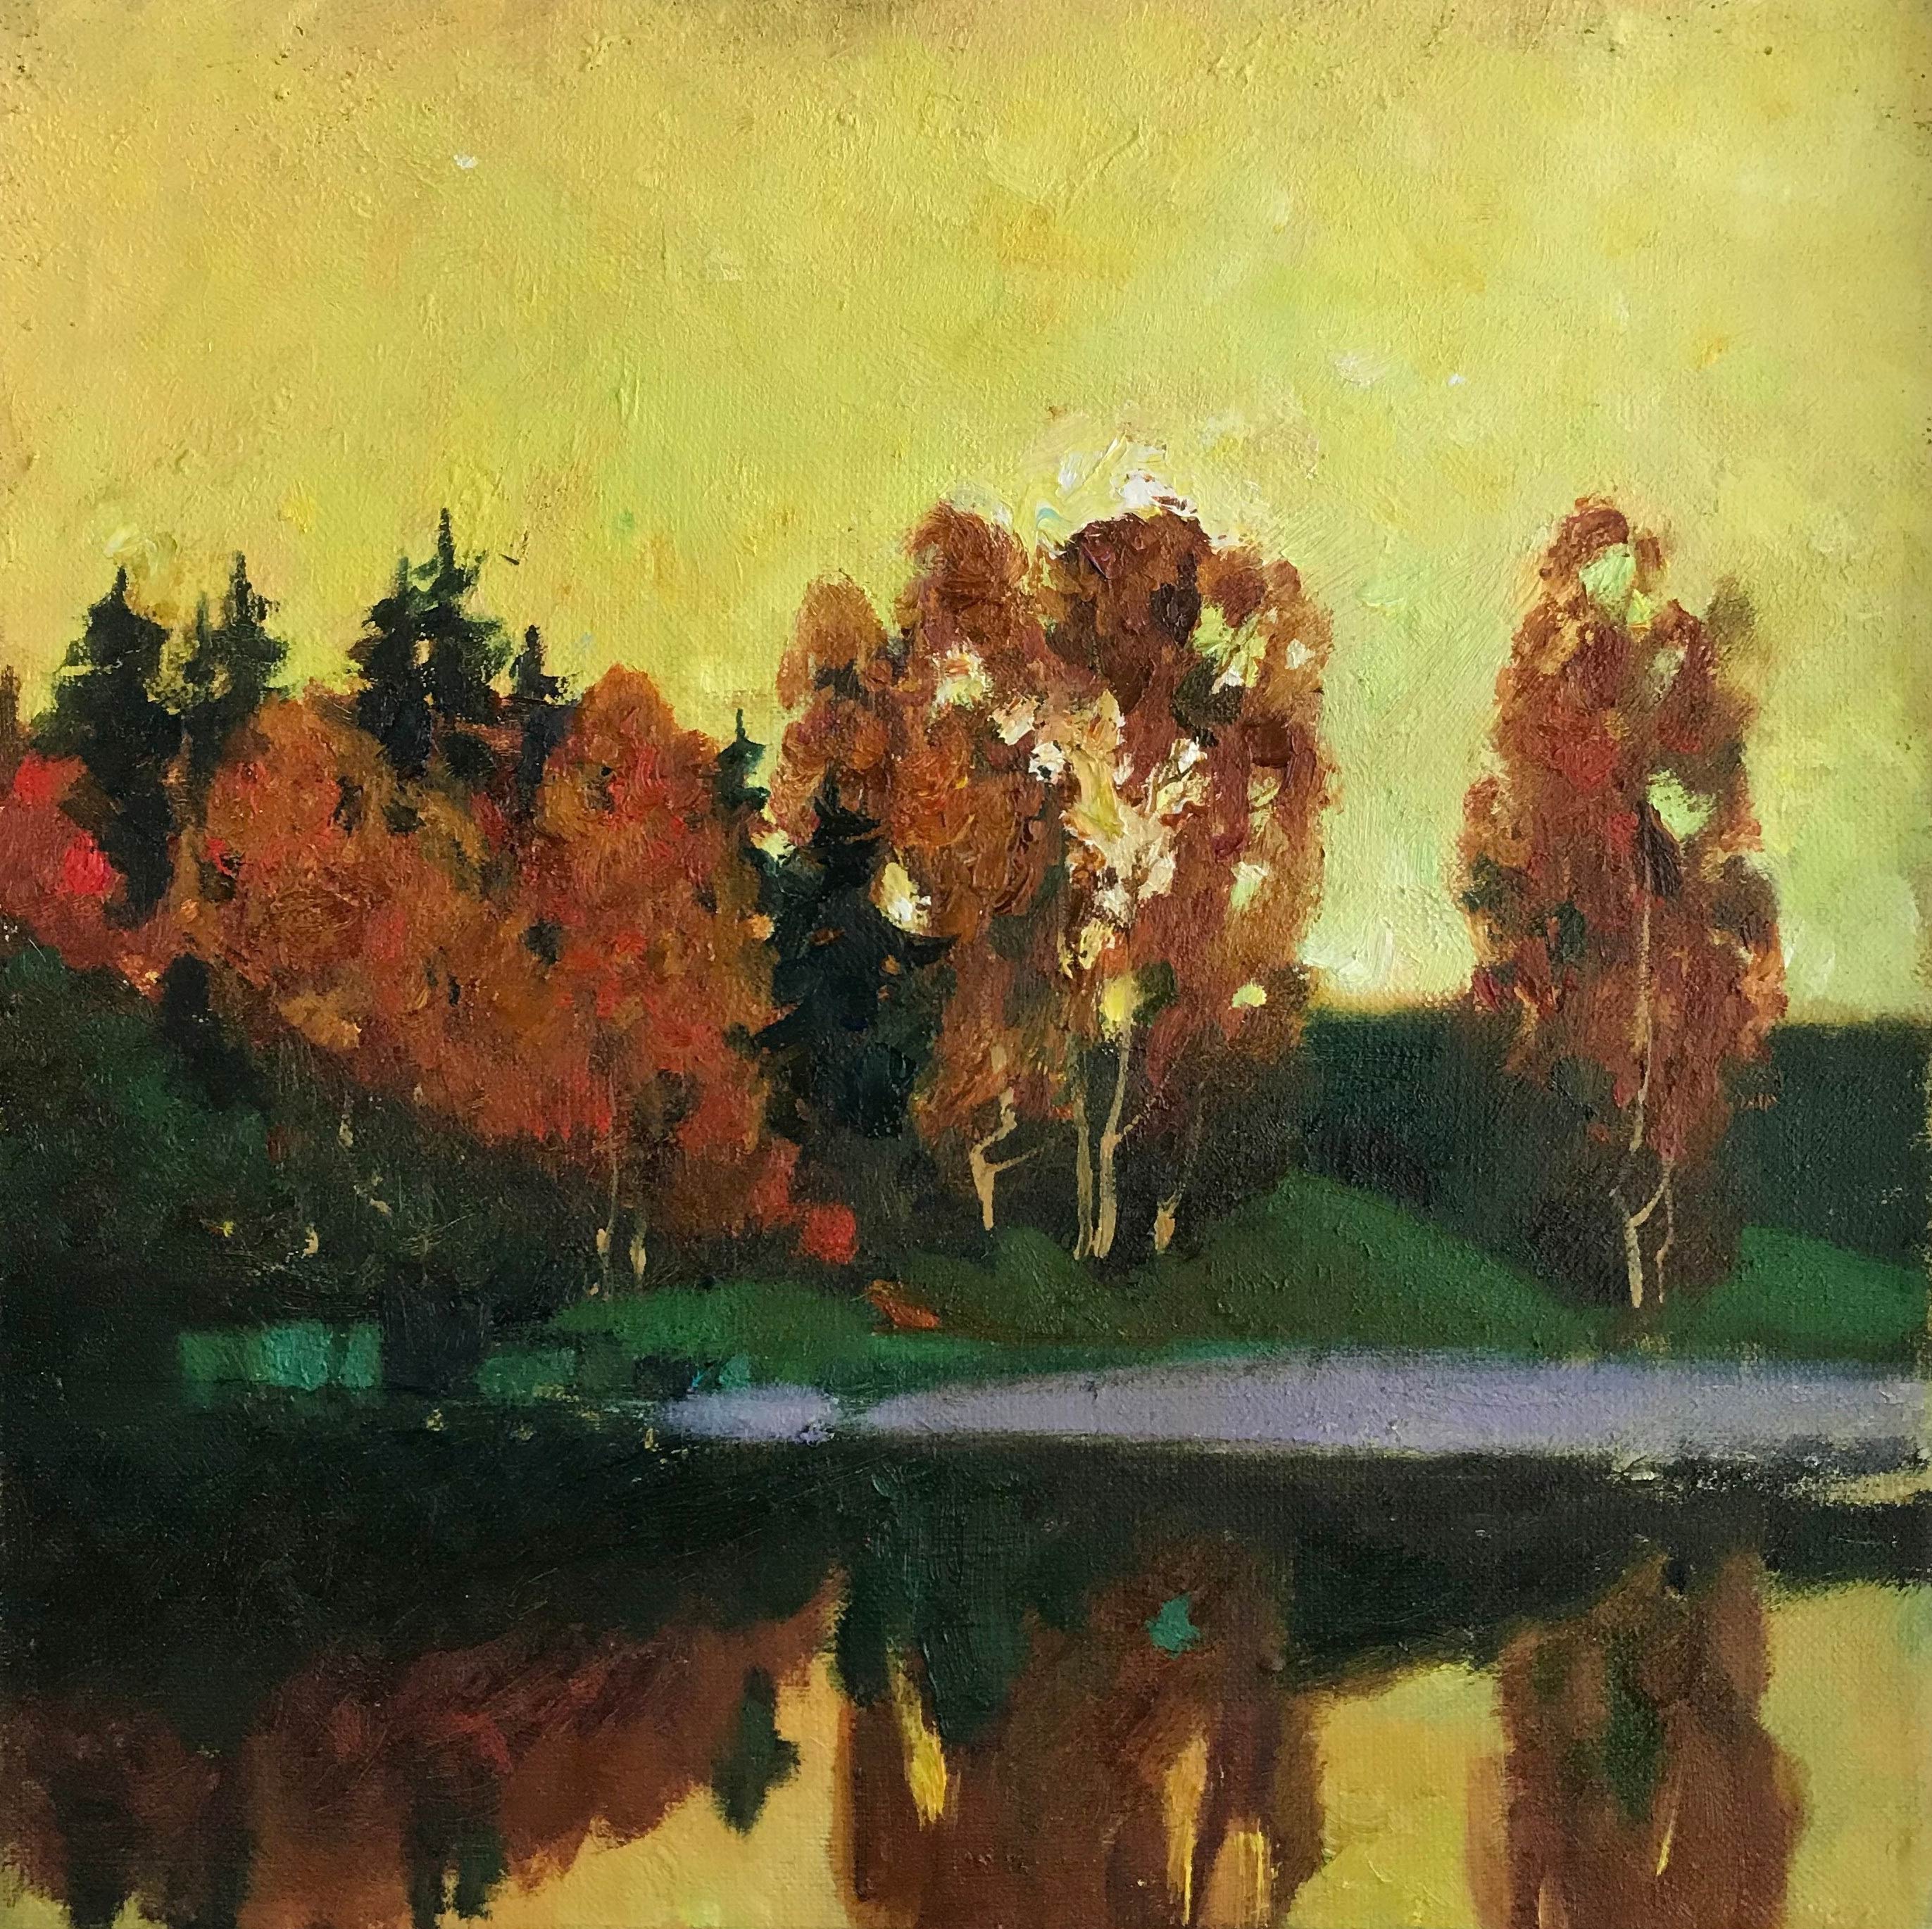 Warm Evening - 1, Evgeniya Davletshina, Buy the painting Oil